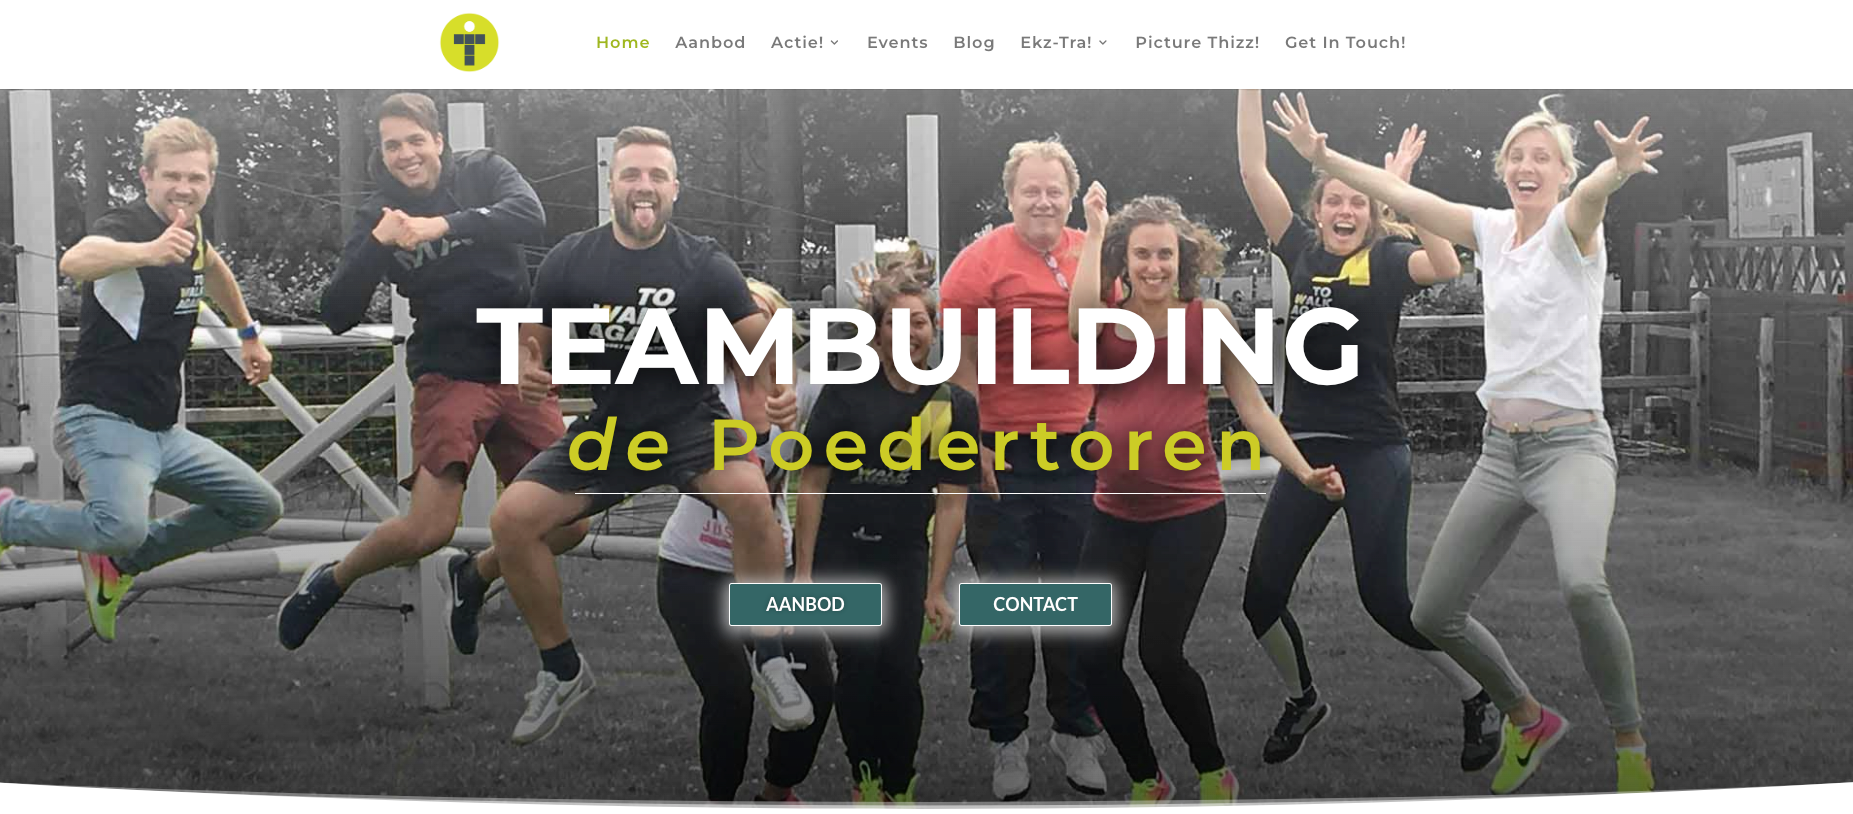 Teambuilding de Poedertoren website